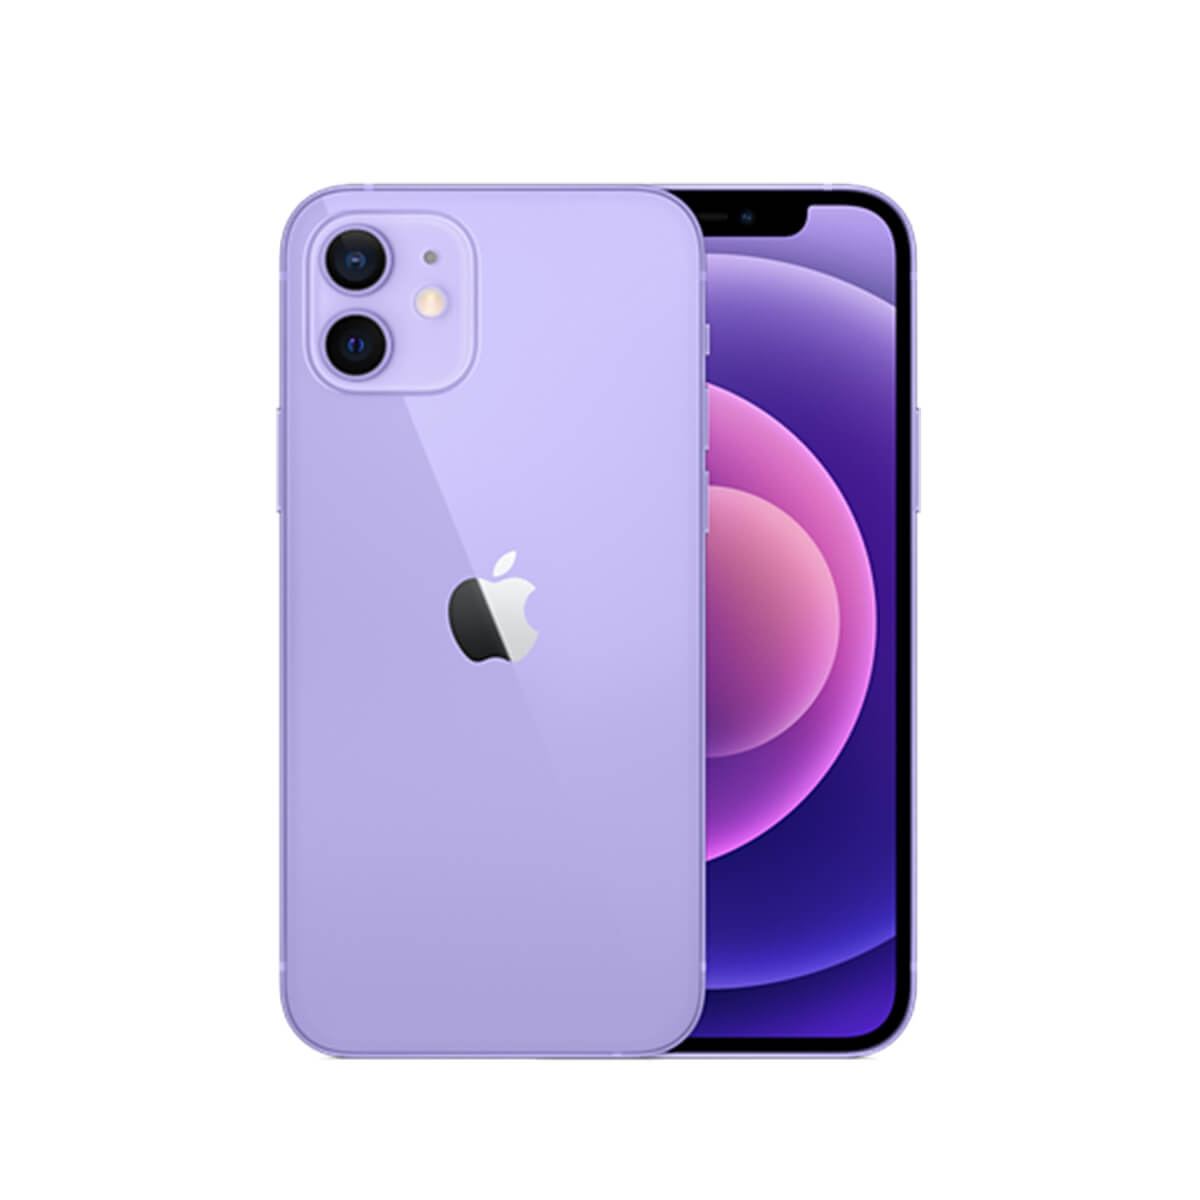 忠明店】iPhone12 Mini 紫色64GB #798 | 鼎威使用蘋果授權原廠零件